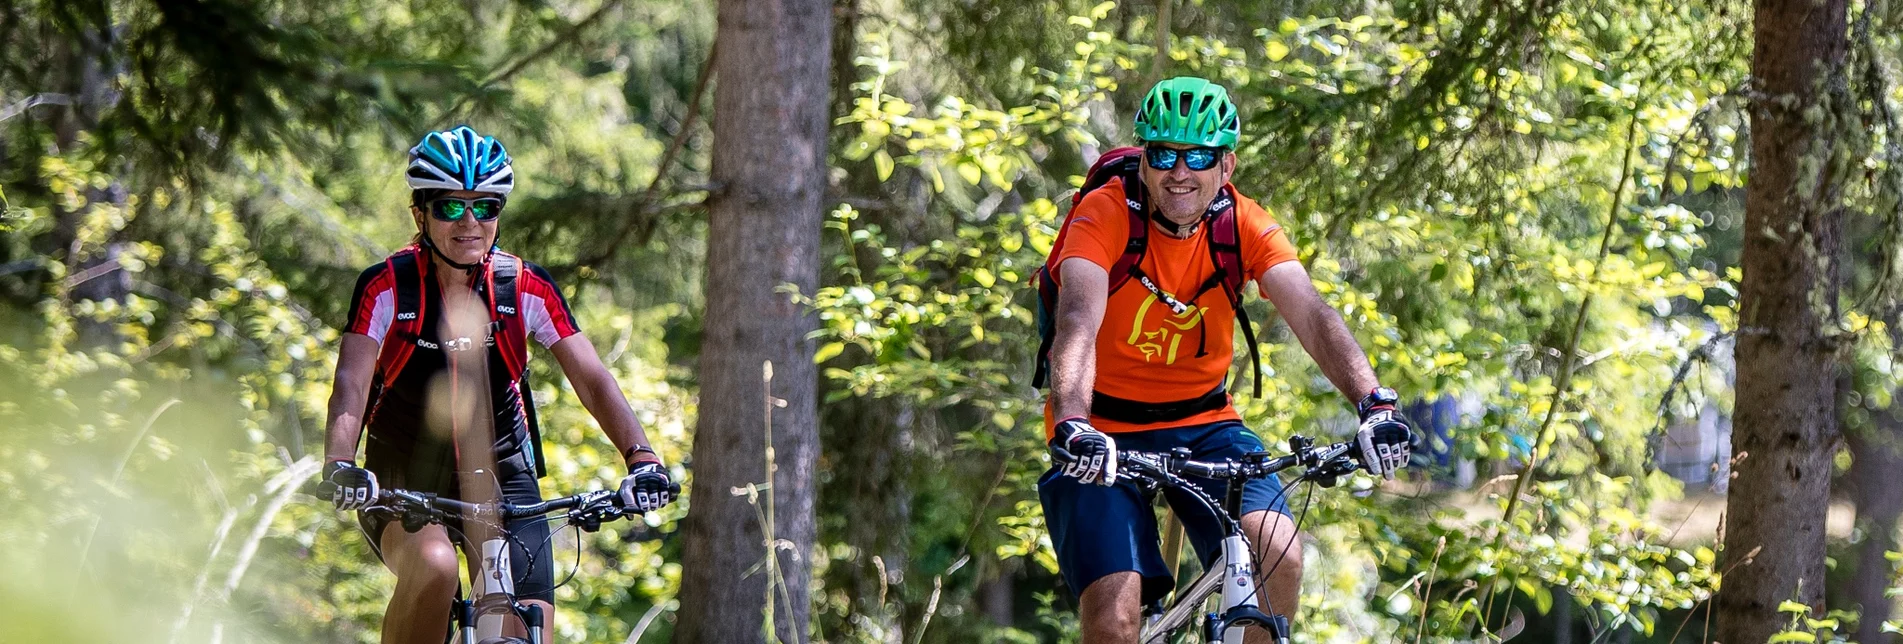 Mountain Biking Via Natura cycle path stage 3 - Touren-Impression #1 | © Tourismusverband Region Murau